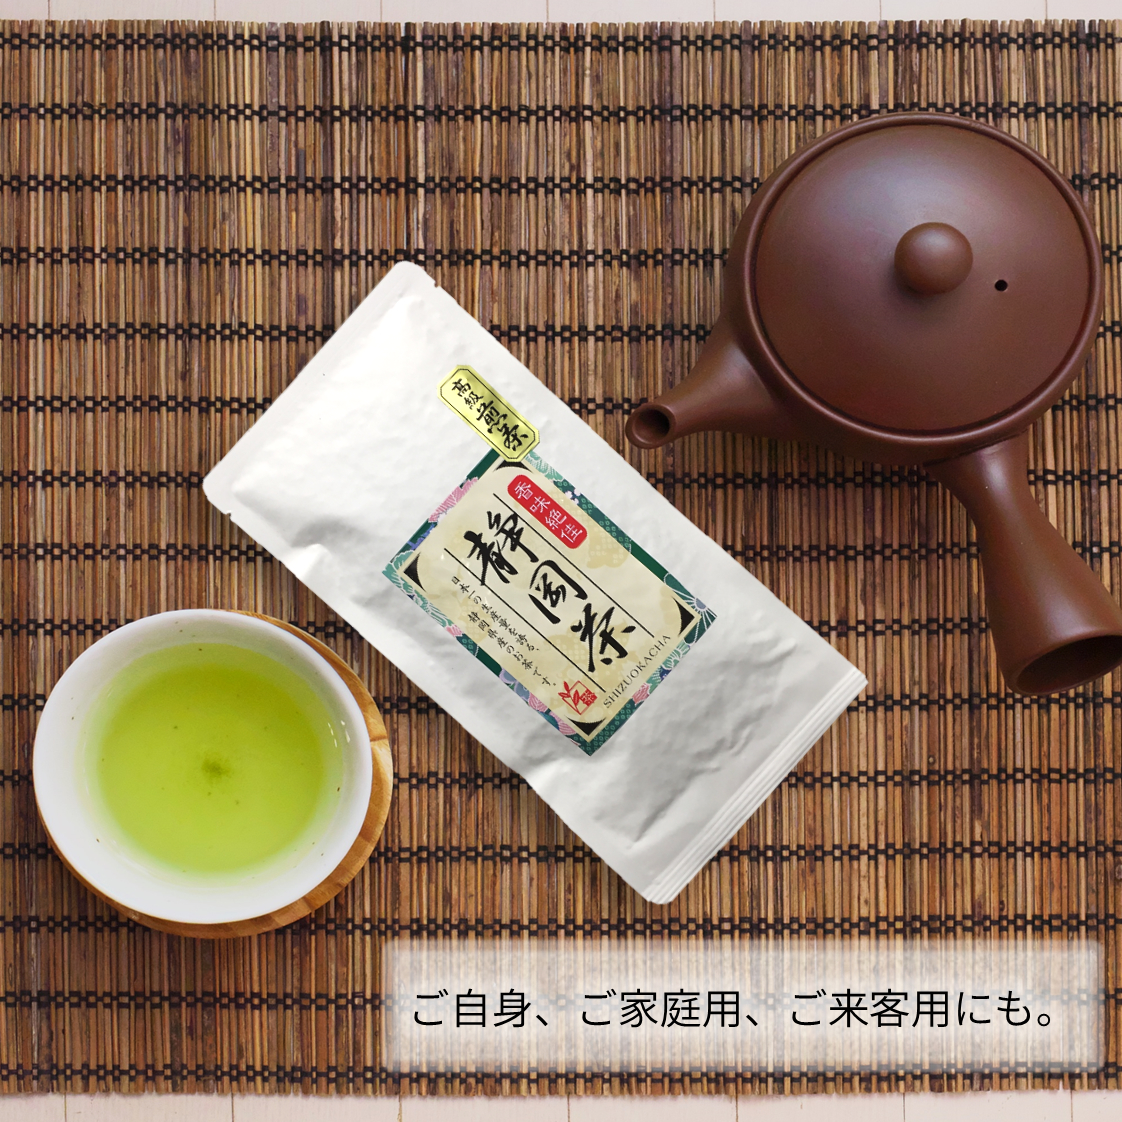 選ぶなら 香々楼 お茶 日本茶 高級茶葉 tbg.qa